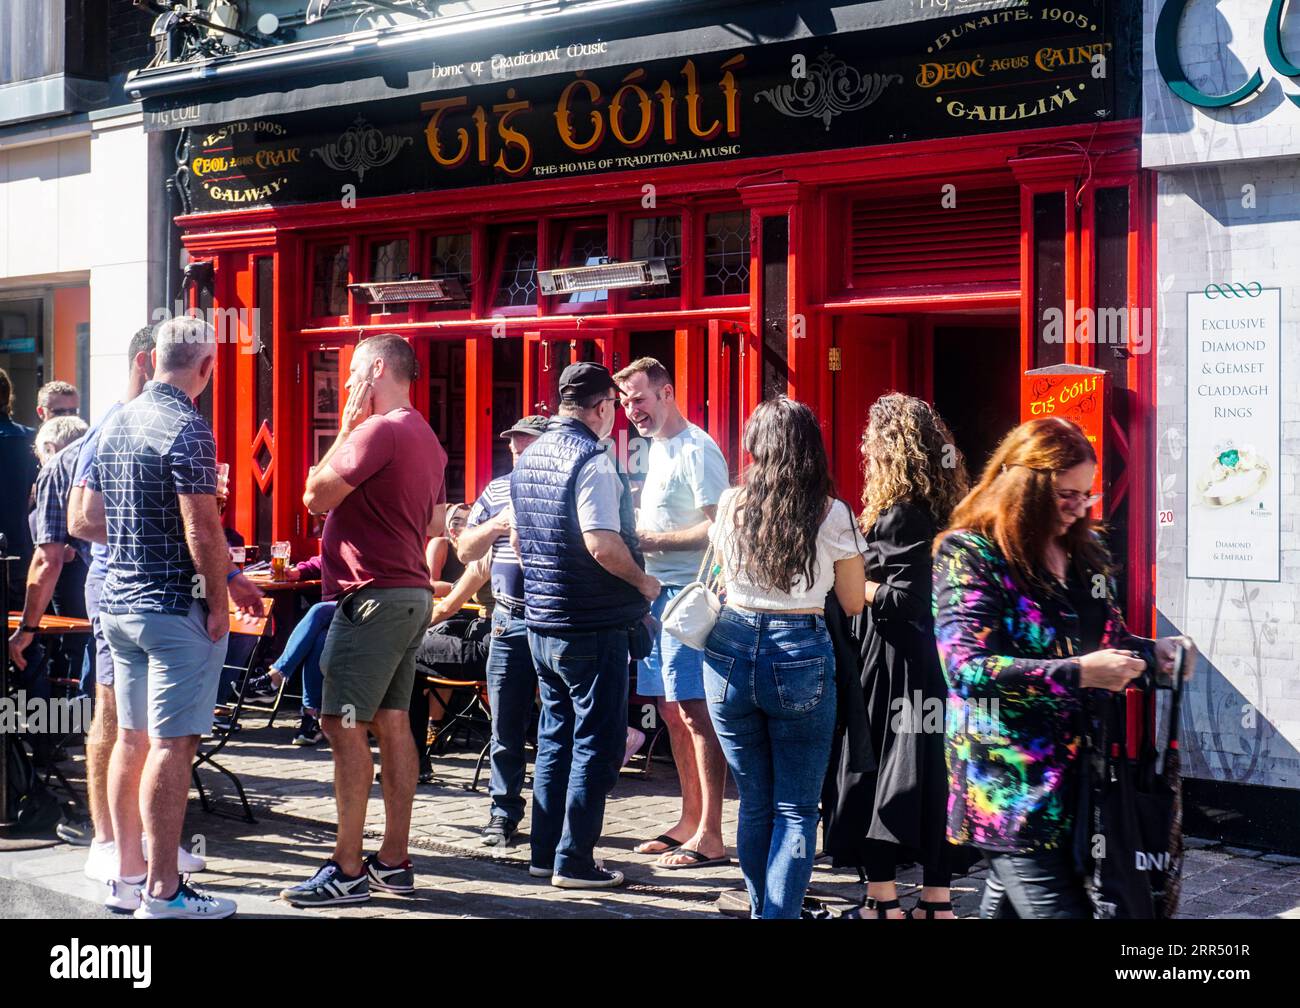 Menschenmassen rund um die Tig Chóilí Bar im Latin Quarter, Mainguard St., Galway Irland. Täglich traditionelle irische Musik. Stockfoto